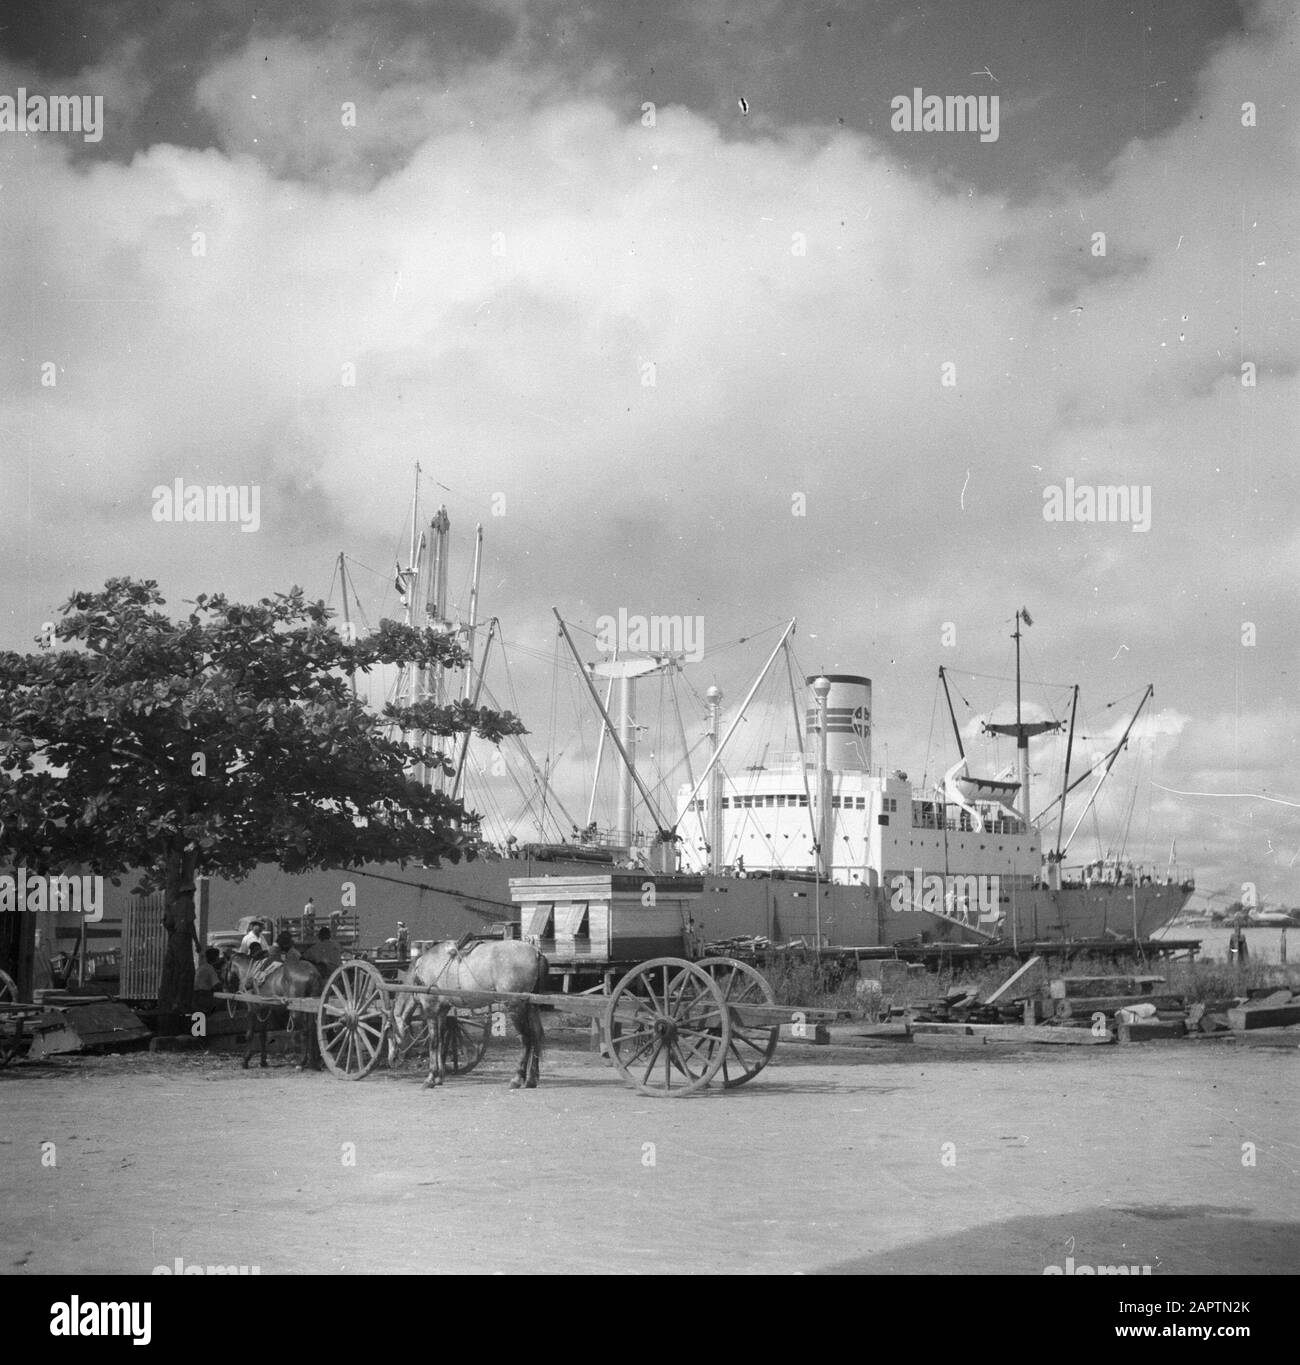 Viaggio in Suriname e Antille Olandesi La nave da carico Alcoa nel porto di Paramaribo Data: 1947 Località: Paramaribo, Suriname Parole Chiave: Porti, navi Foto Stock